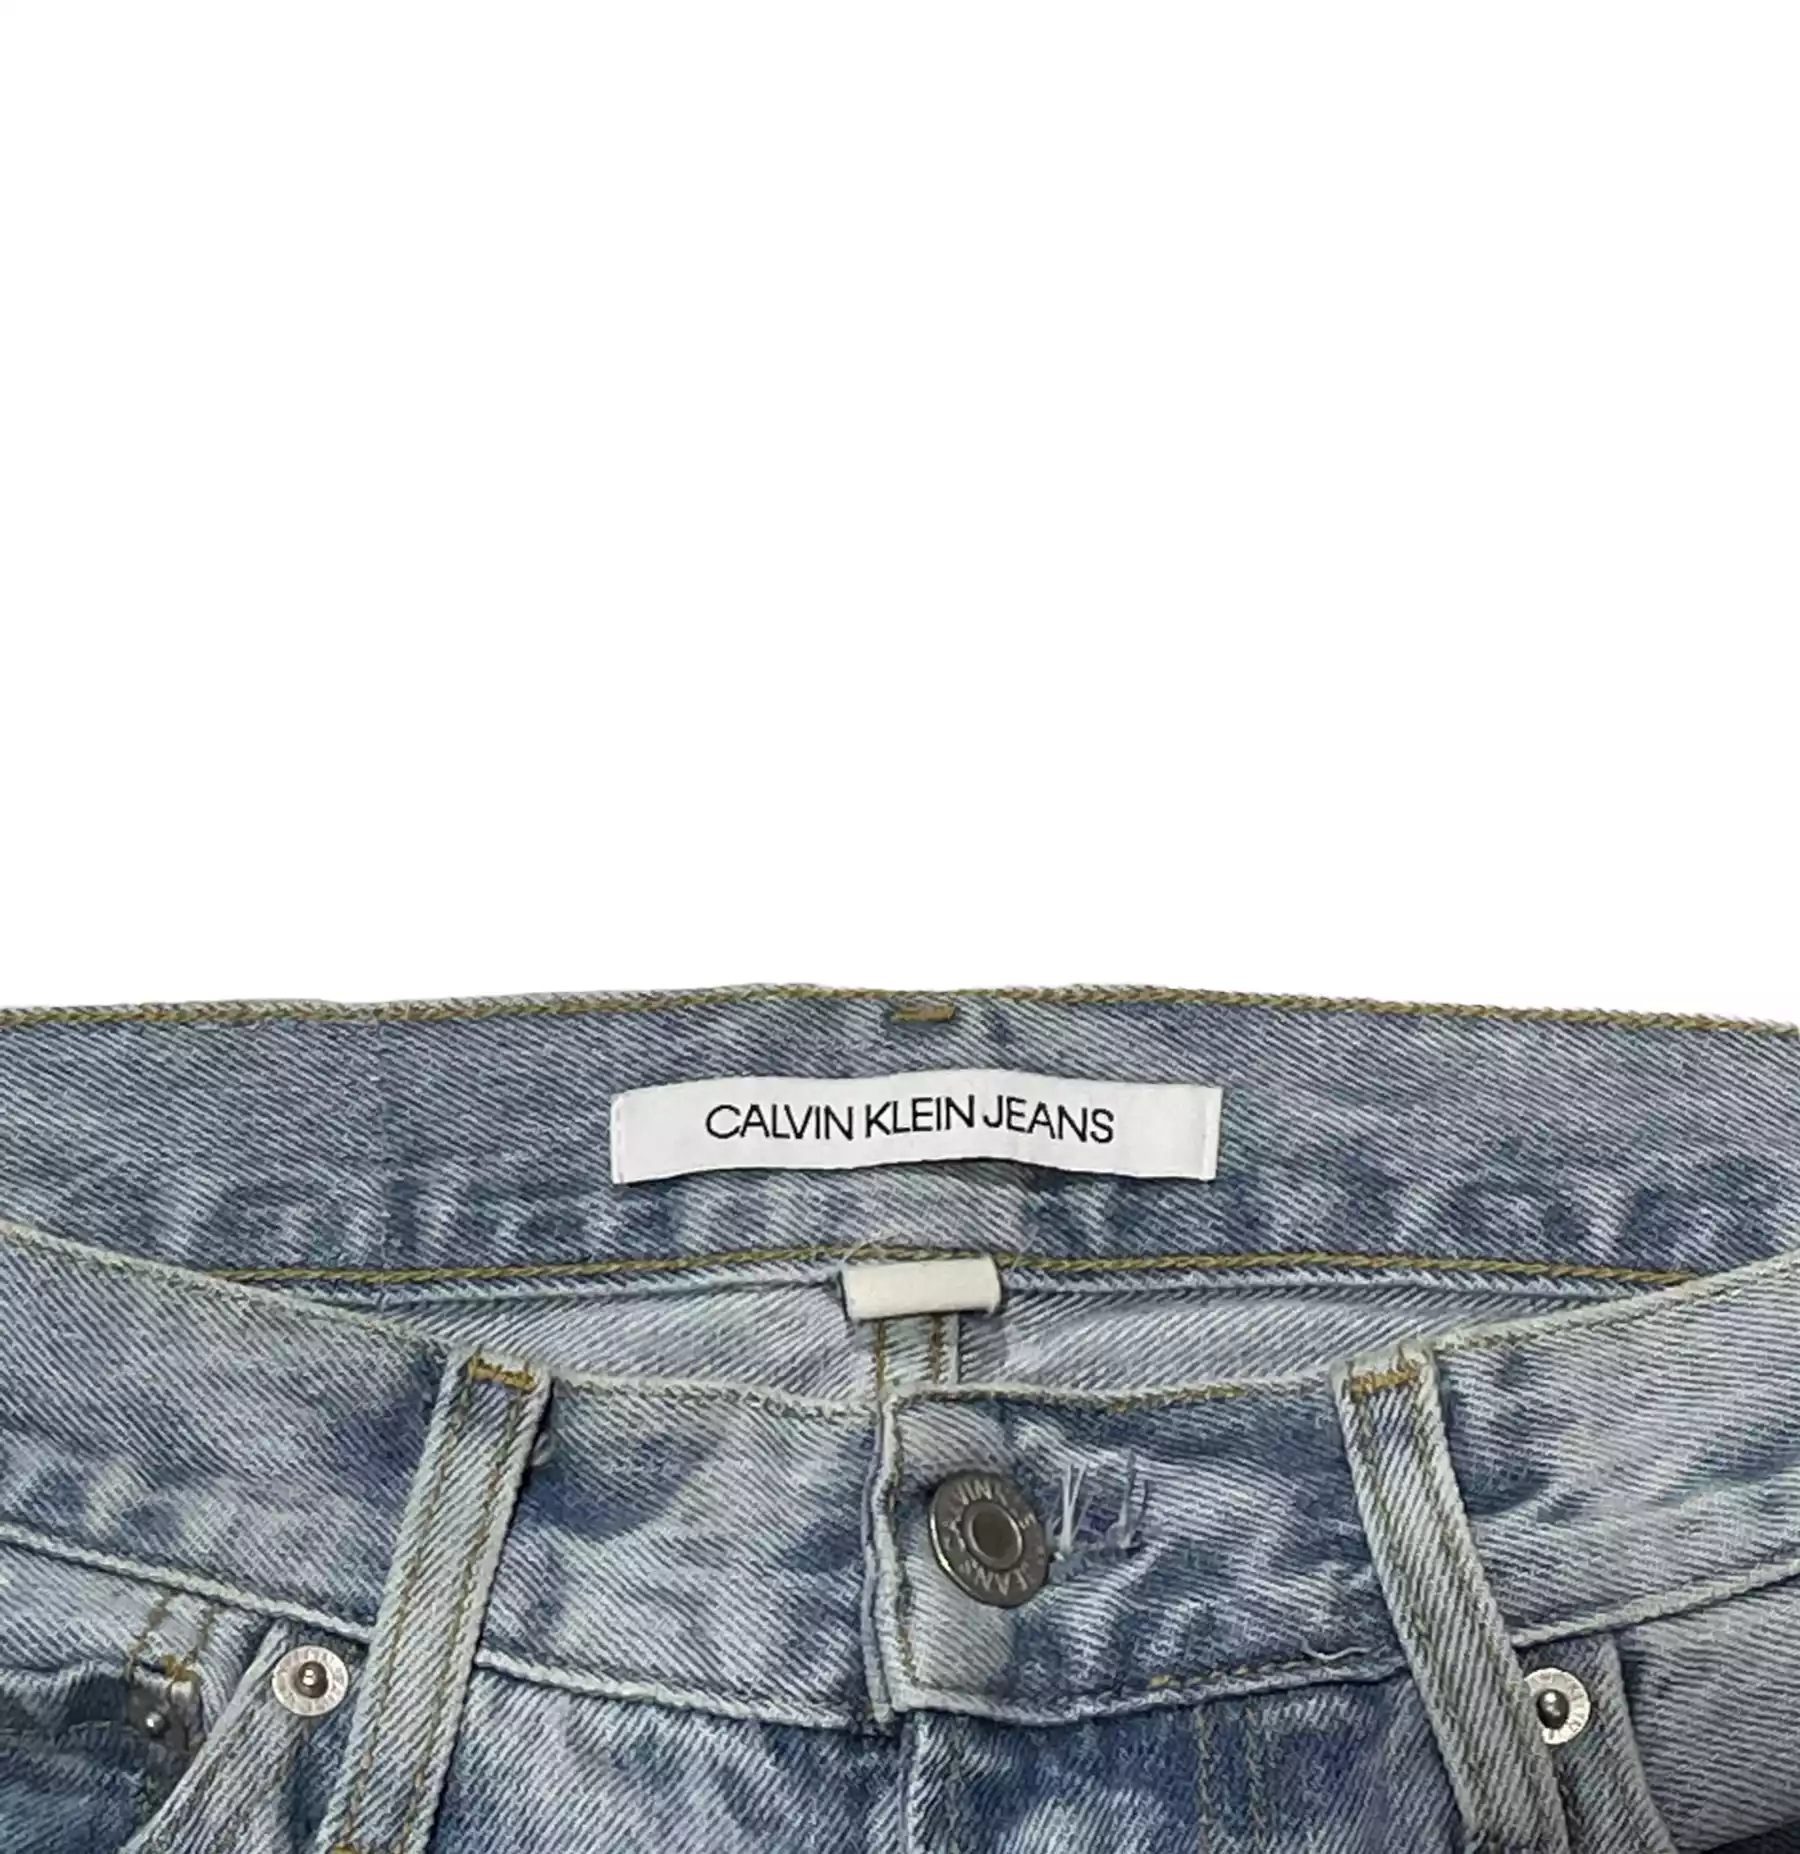 Denim Jeans By Calvi Klein